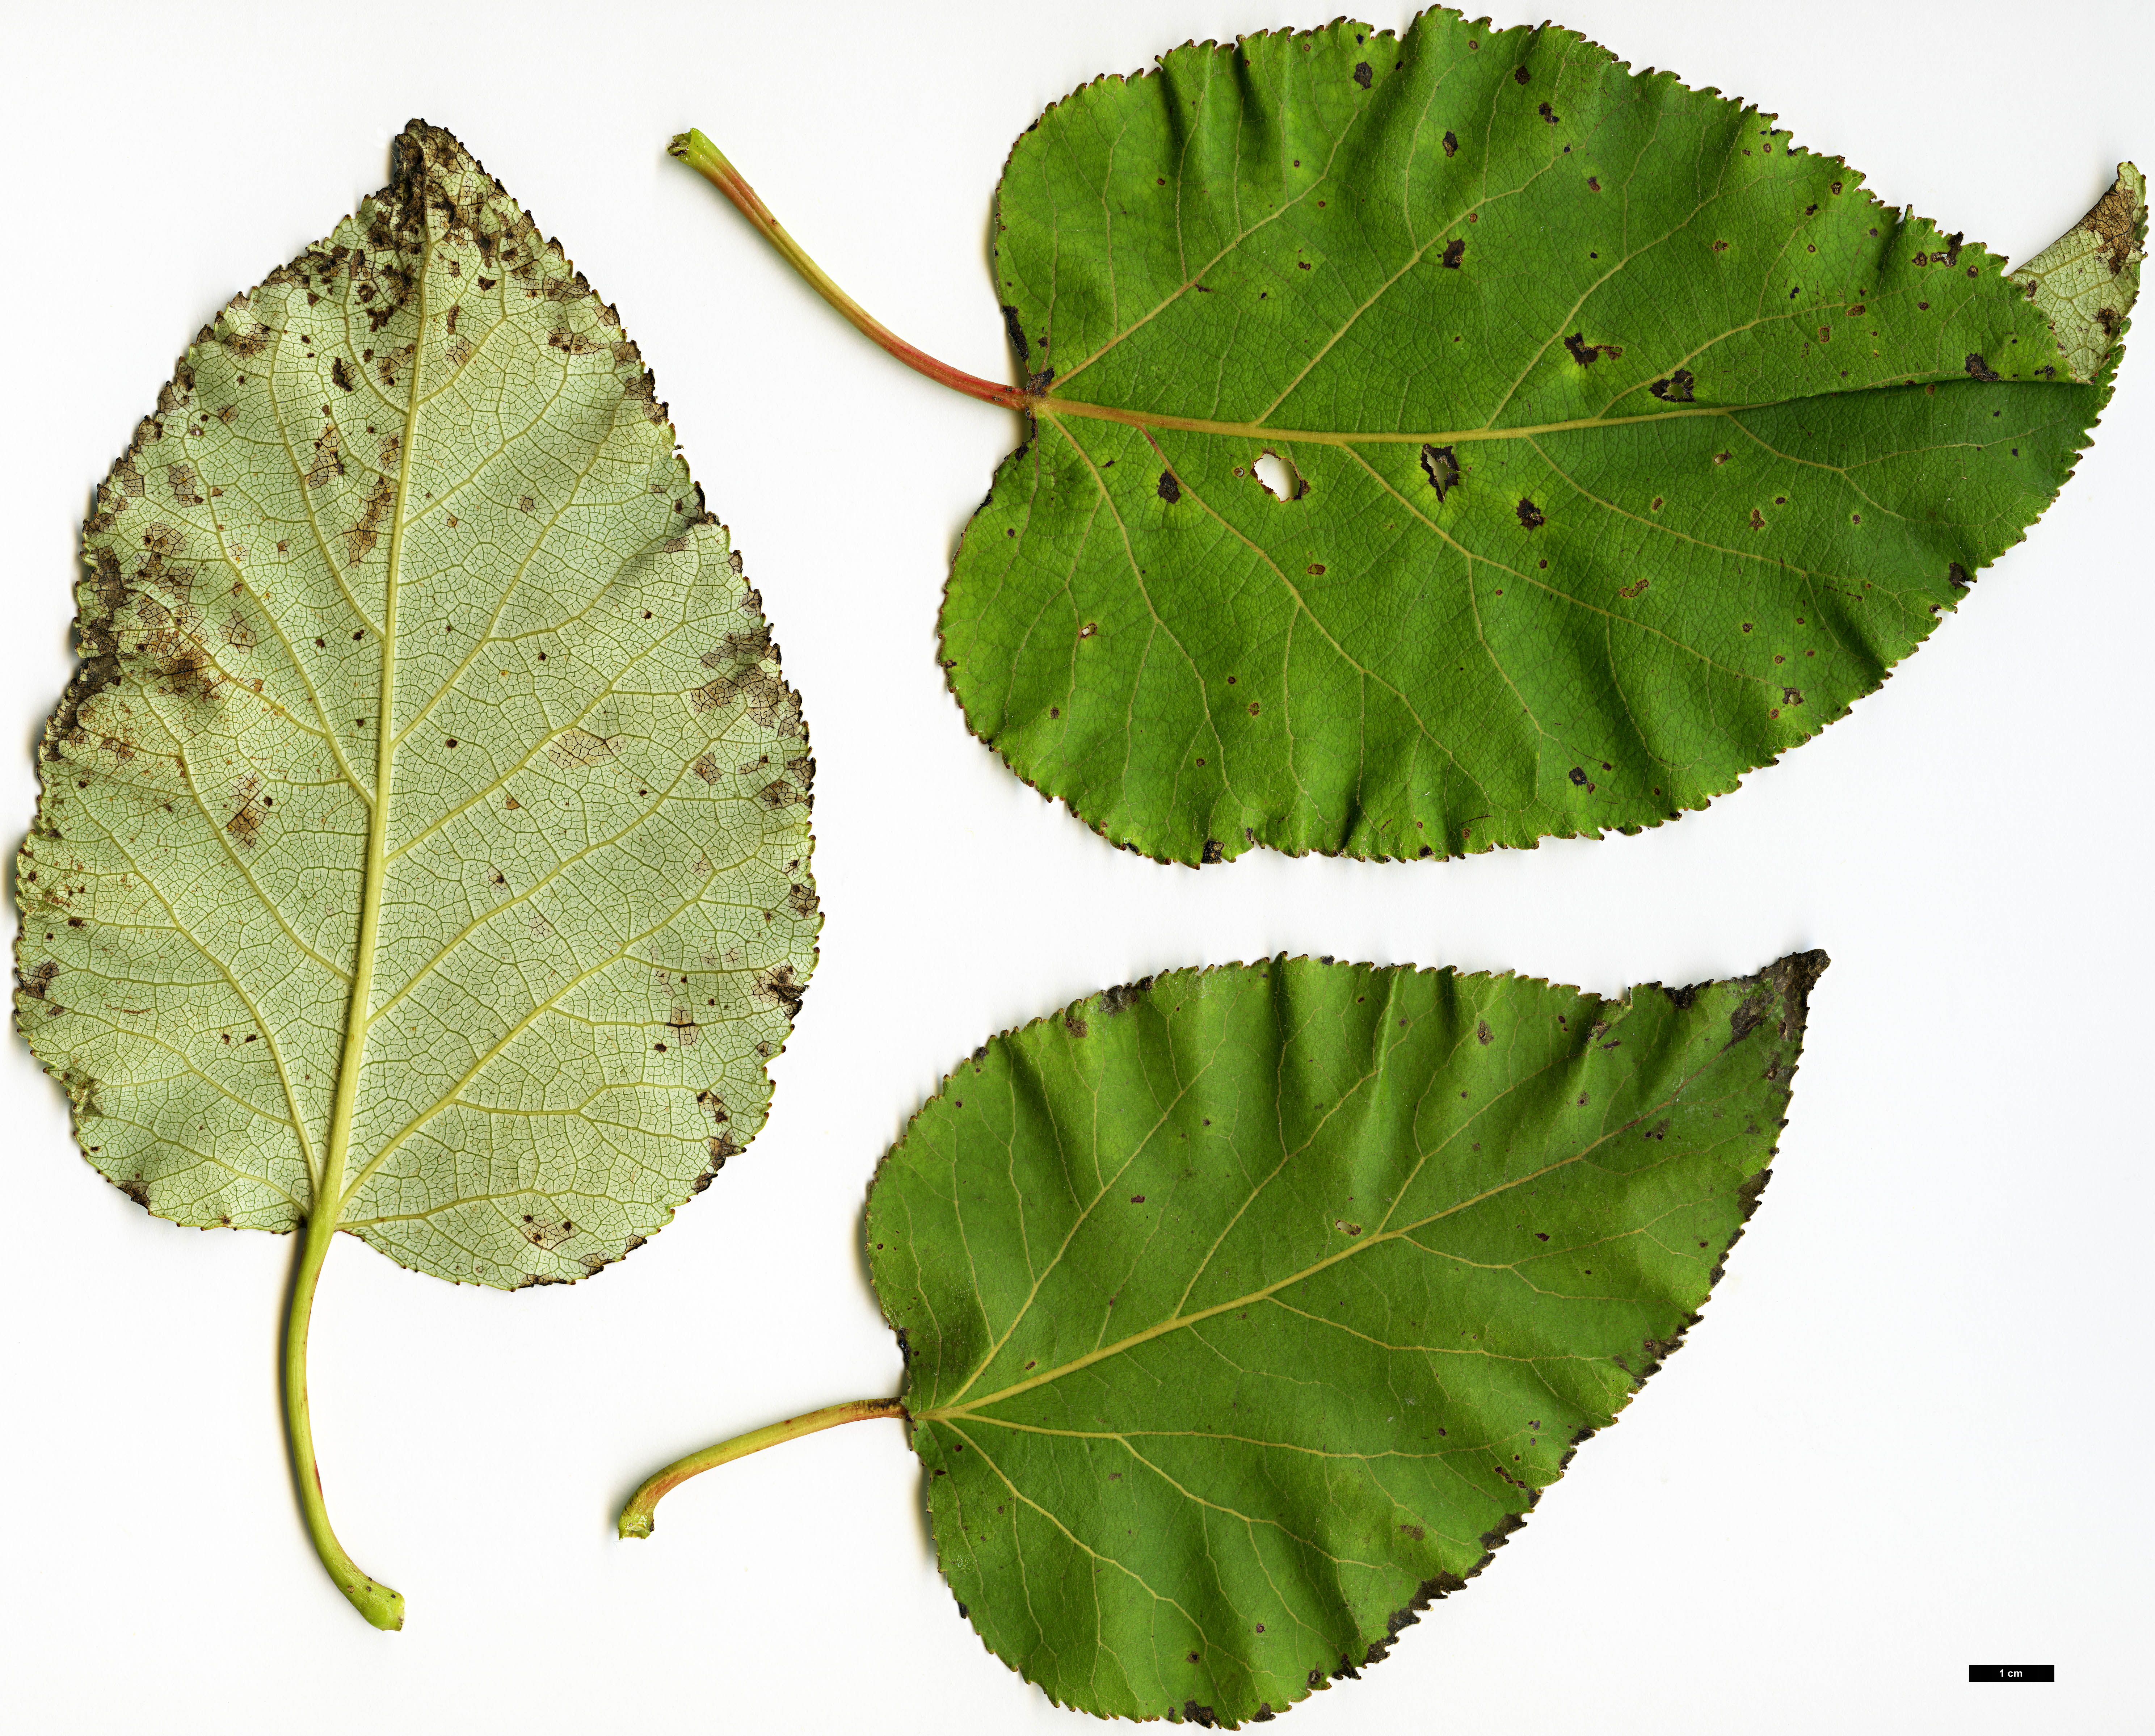 High resolution image: Family: Salicaceae - Genus: Populus - Taxon: ciliata